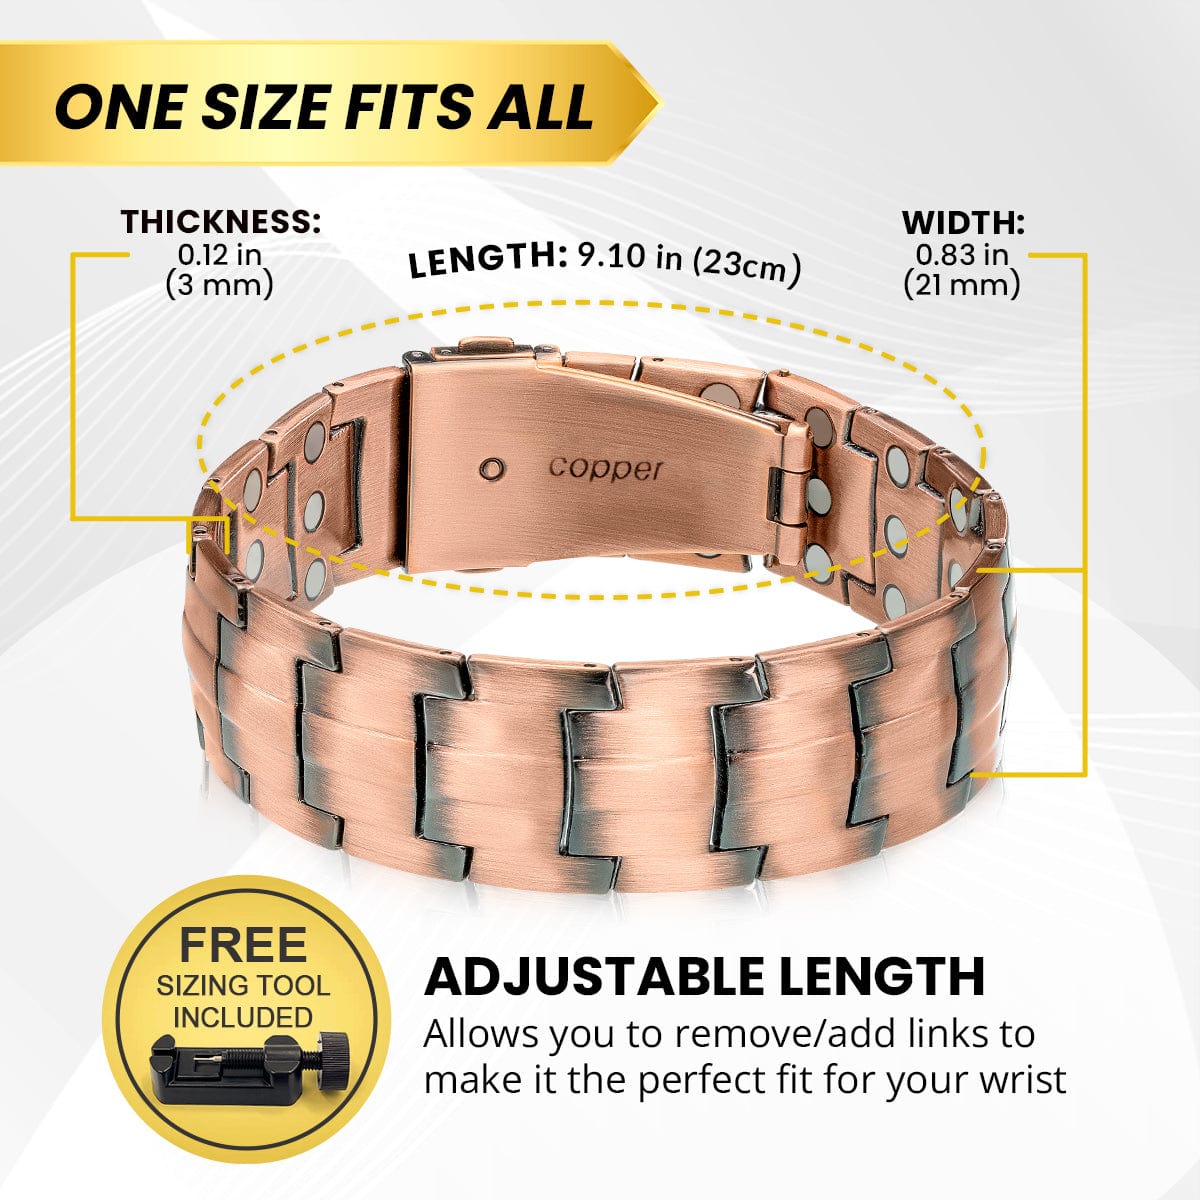 Magnetic Bracelet 3x Strength Copper Magnetic Bracelet for Men (Legacy) MagnetRX